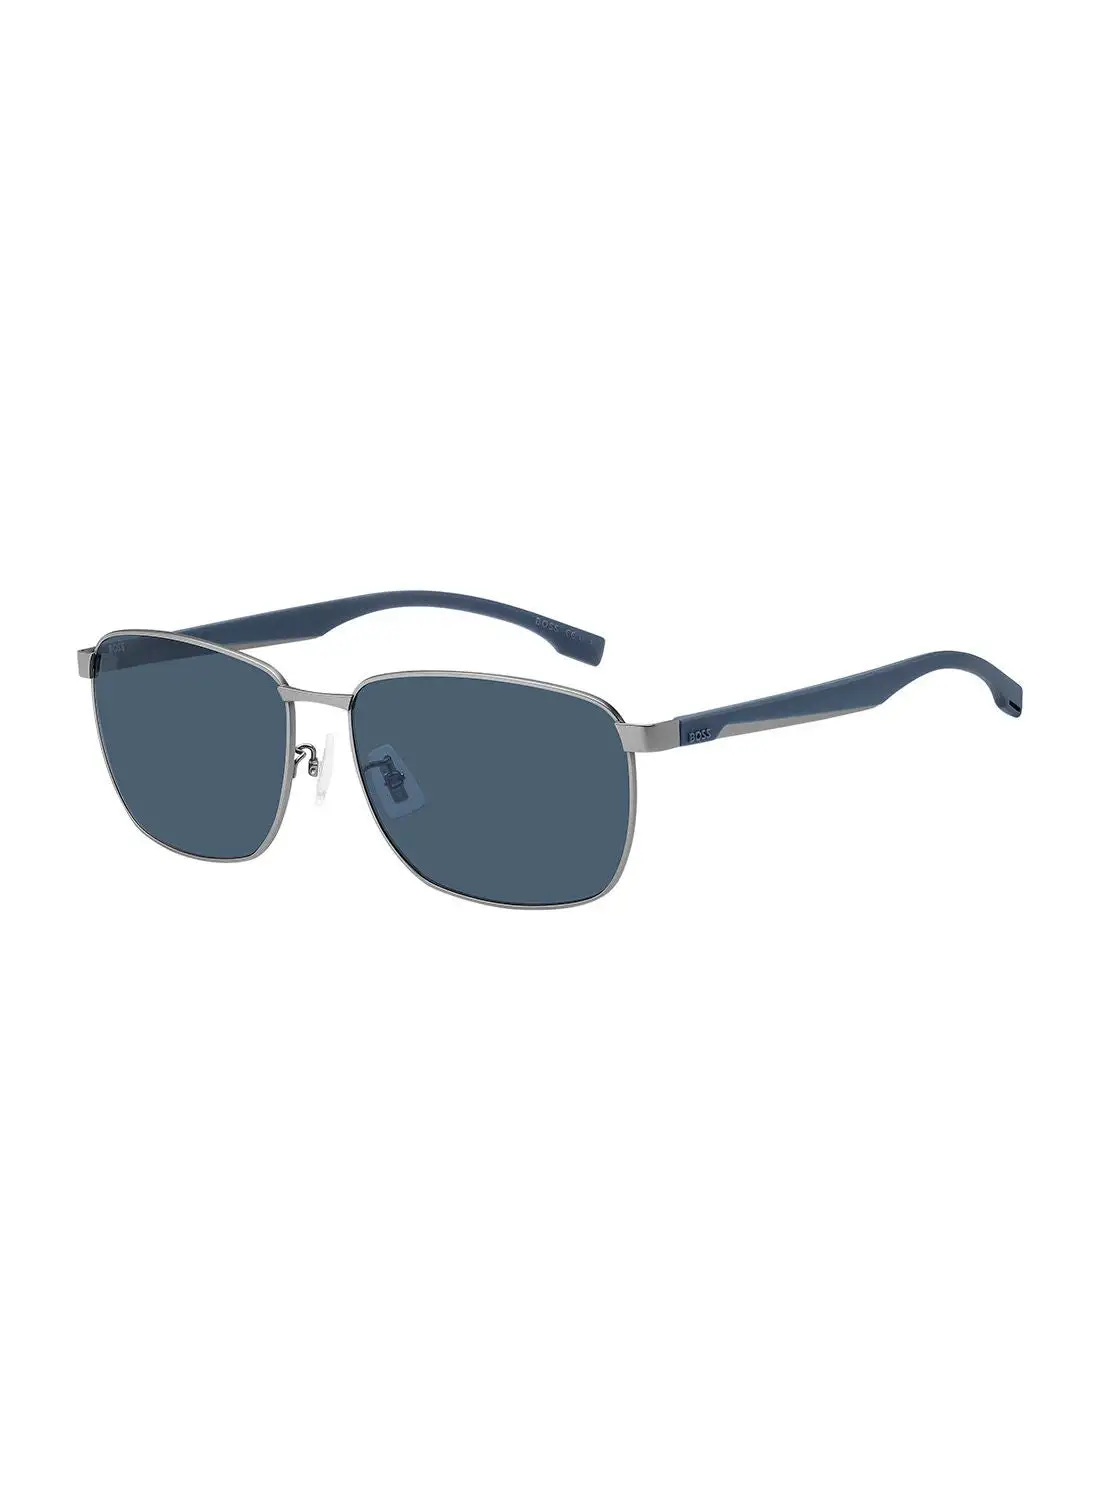 HUGO BOSS Men's UV Protection Rectangular Sunglasses - Boss 1469/F/Sk Mt Ruthen 62 - Lens Size: 62 Mm